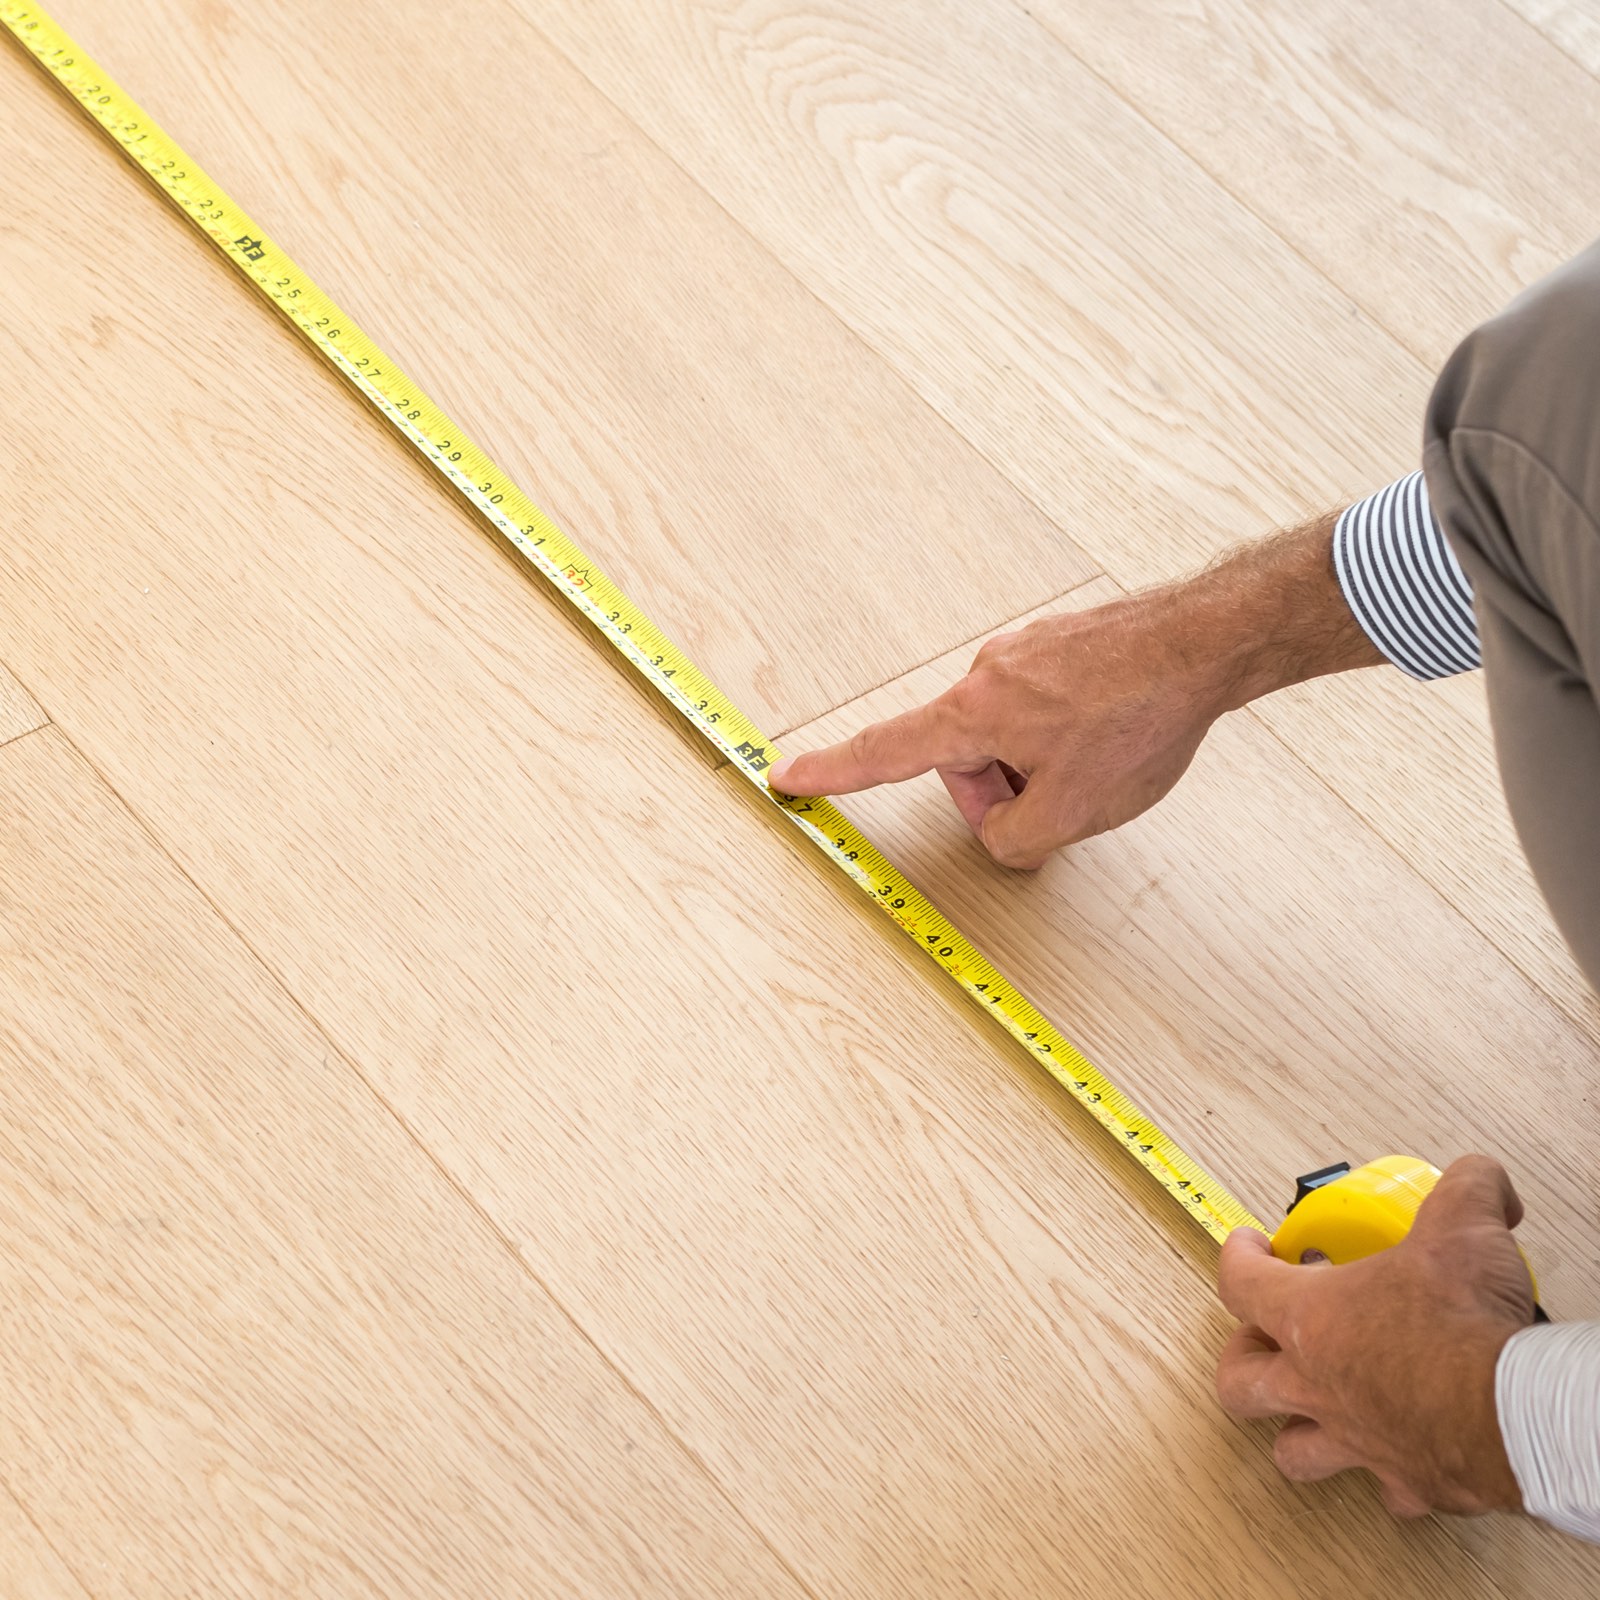 measure-flooring | Rockwall Floor and Paint